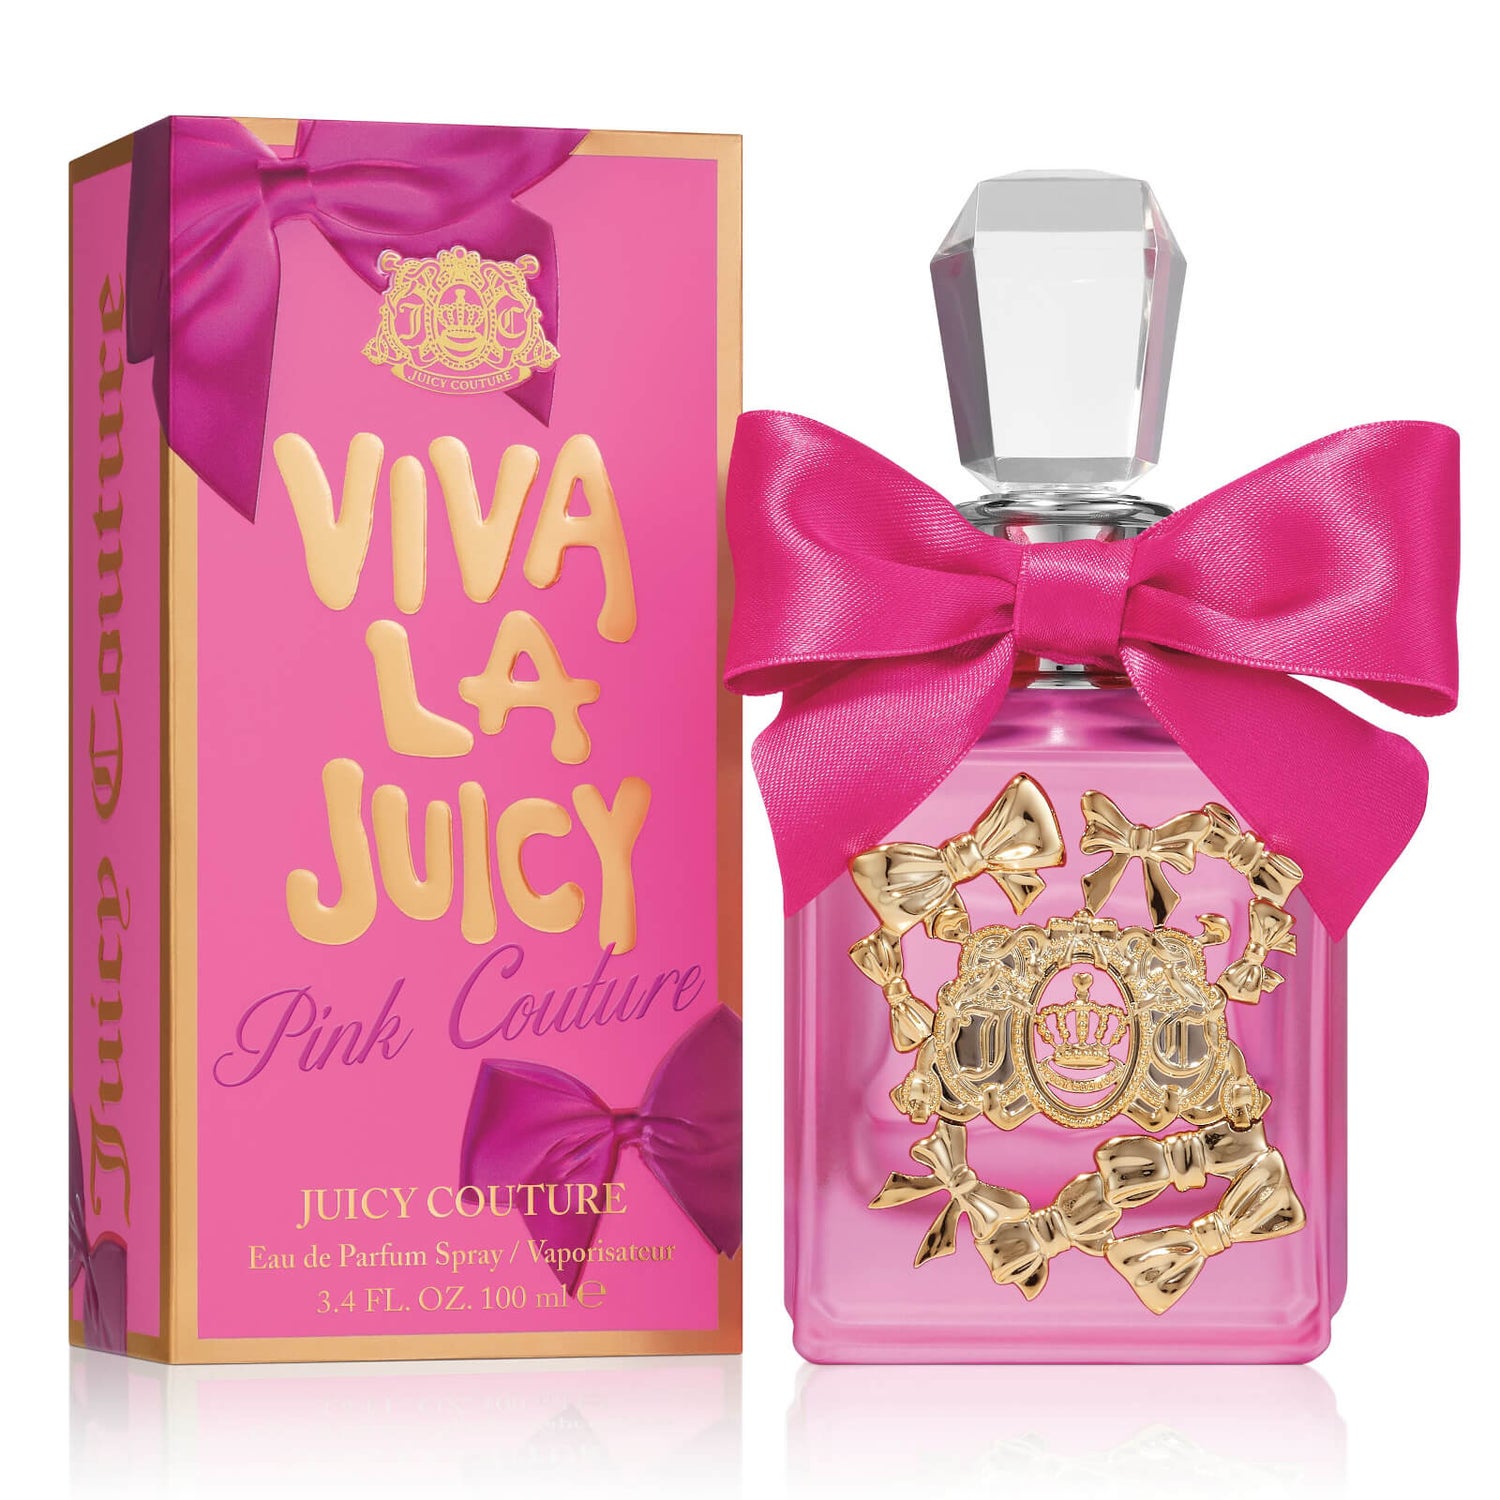 Juicy Couture Viva La Juicy Pink Couture Eau de Parfum Spray (Various Sizes)